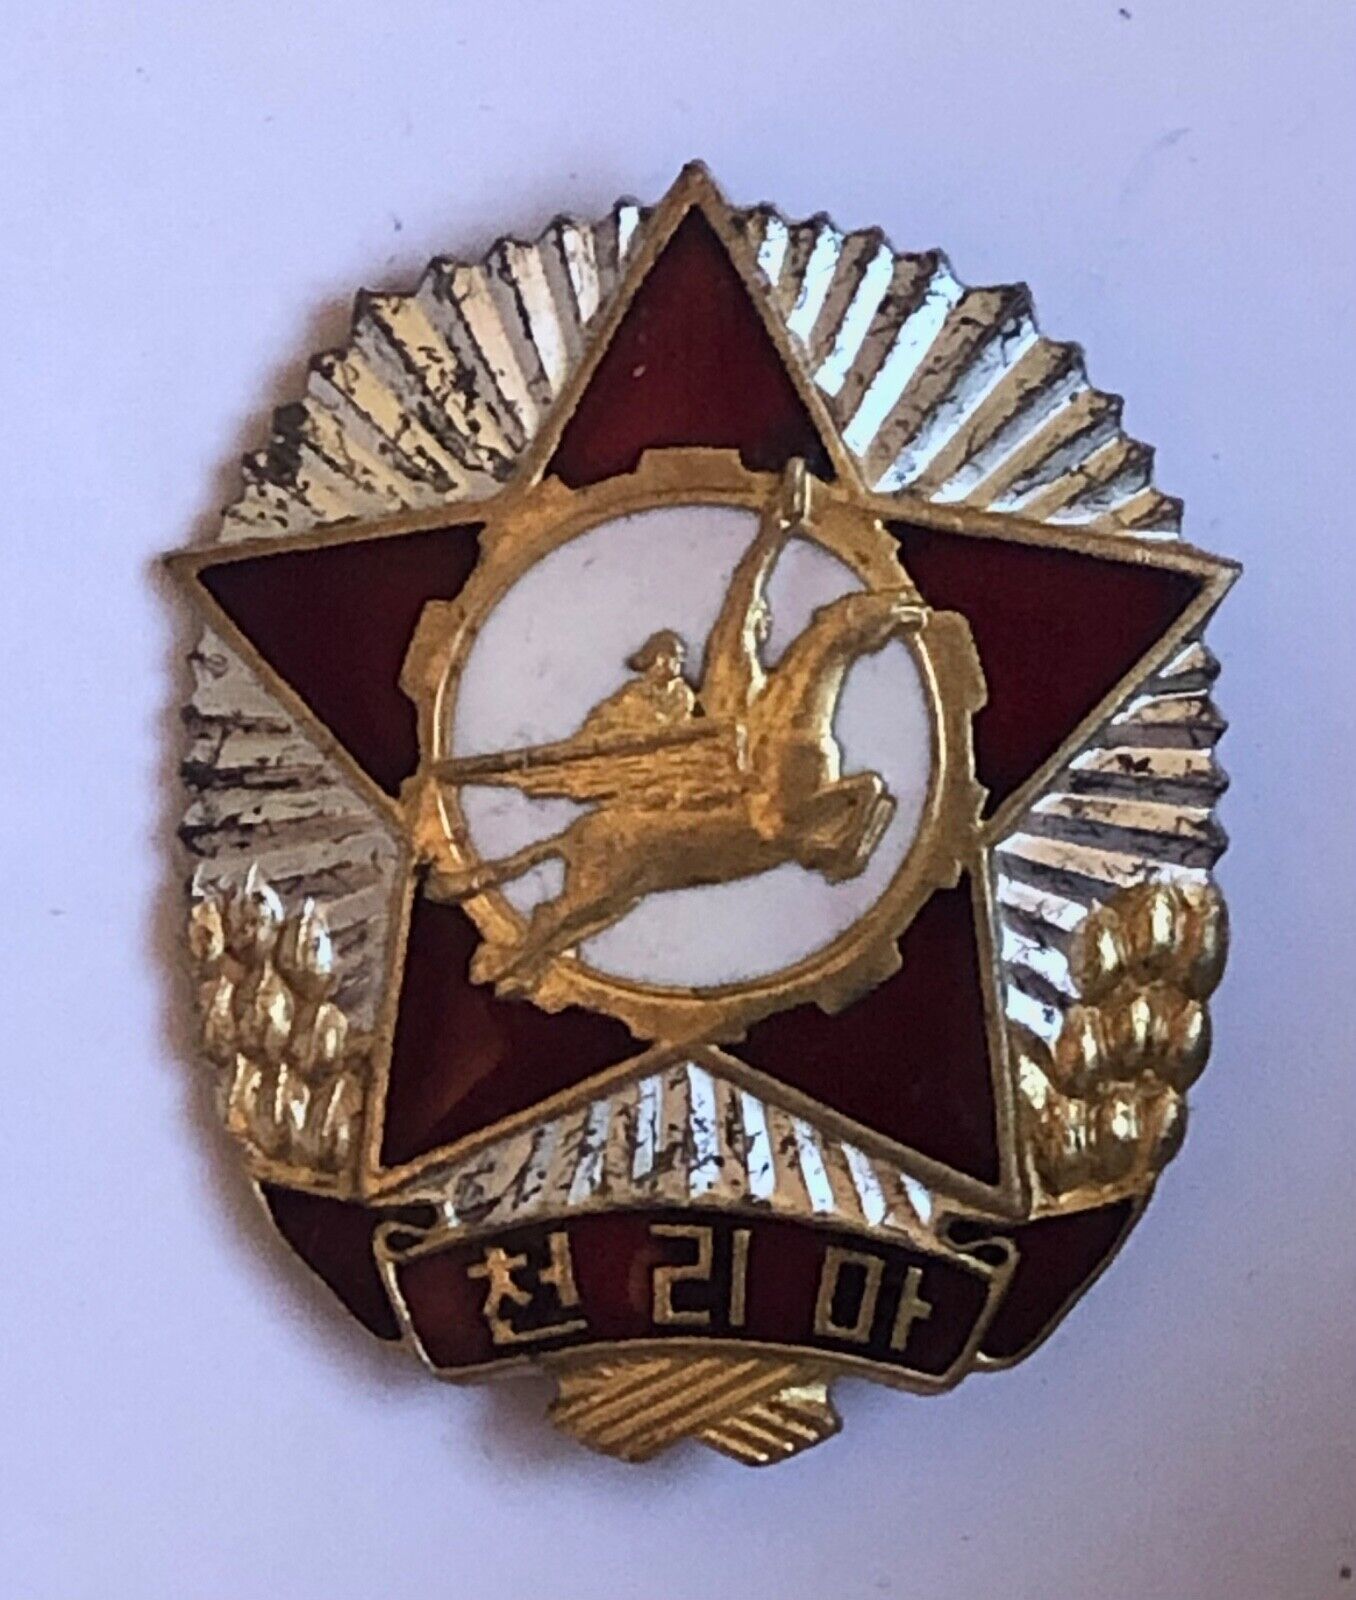 Genuine North Korean DPRK Medal - Chollima Honor Badge